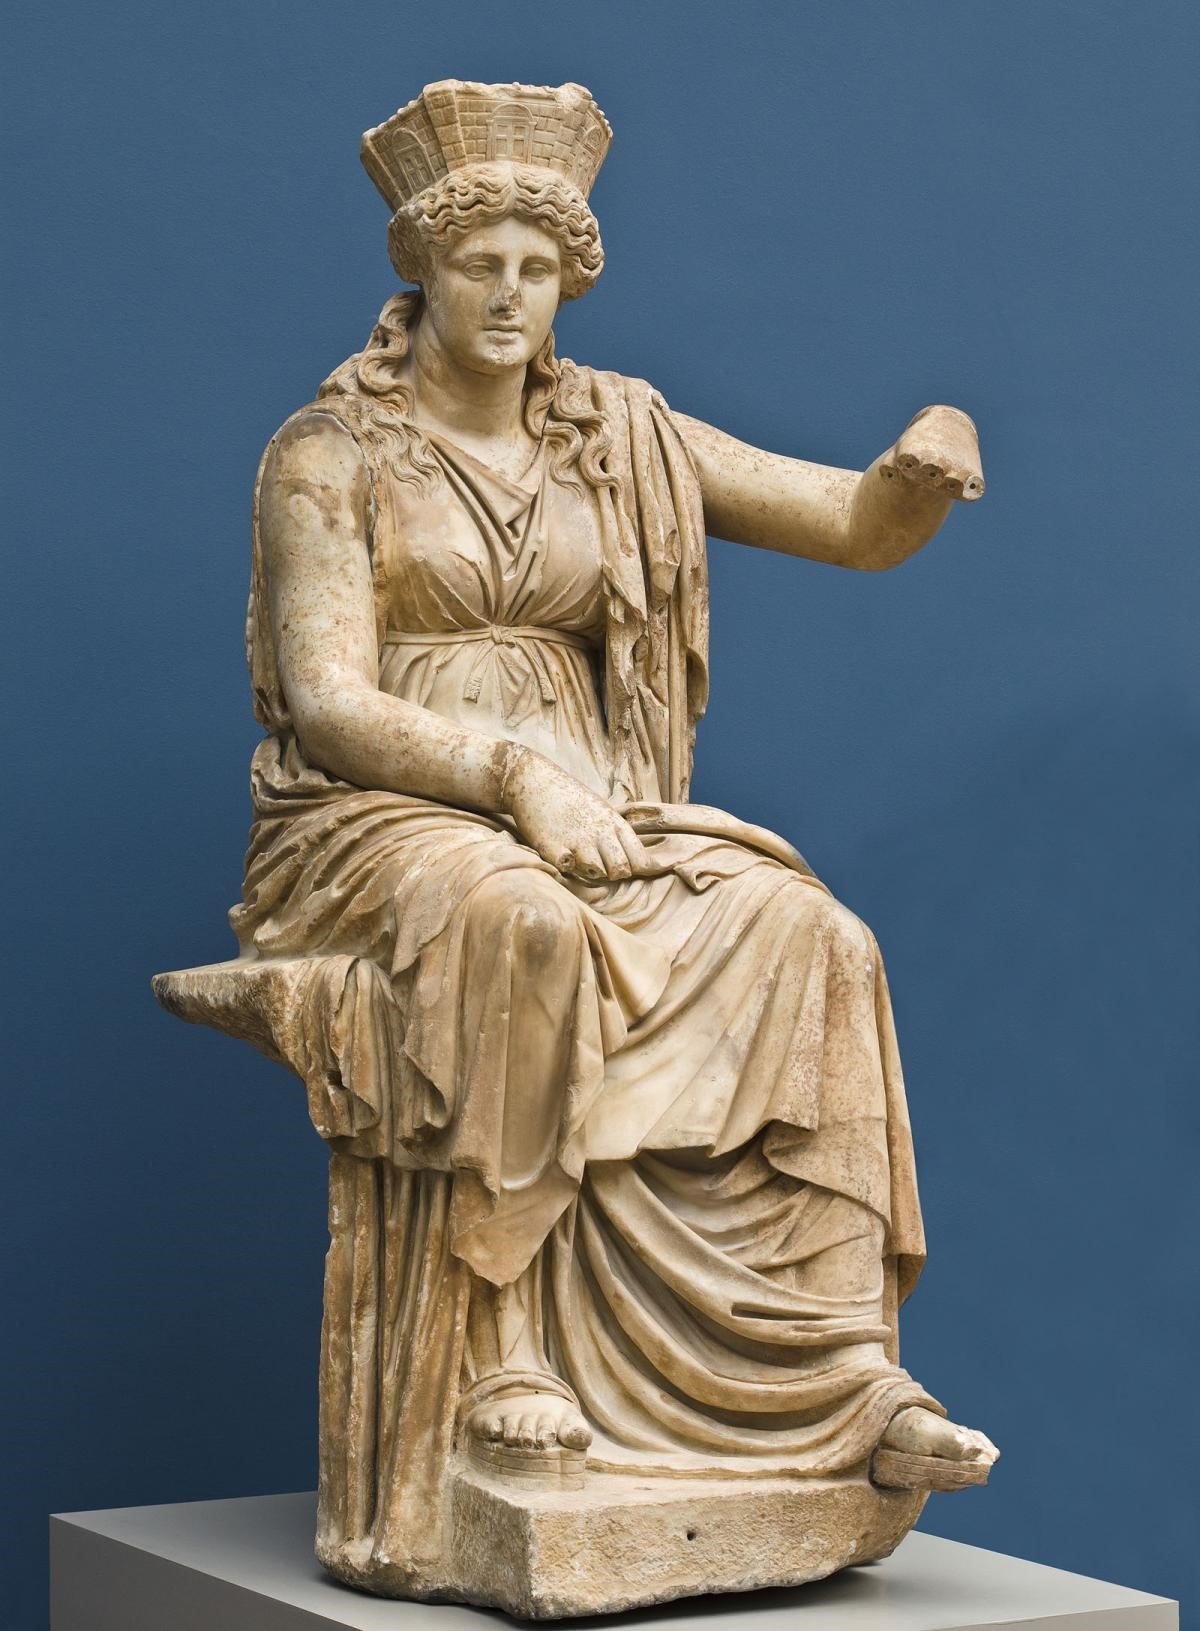 rhea goddess cybele god greek mythology titans kybele statue mother goddesses roman zeus gods ancient bossy sculpture myths fools tutorial